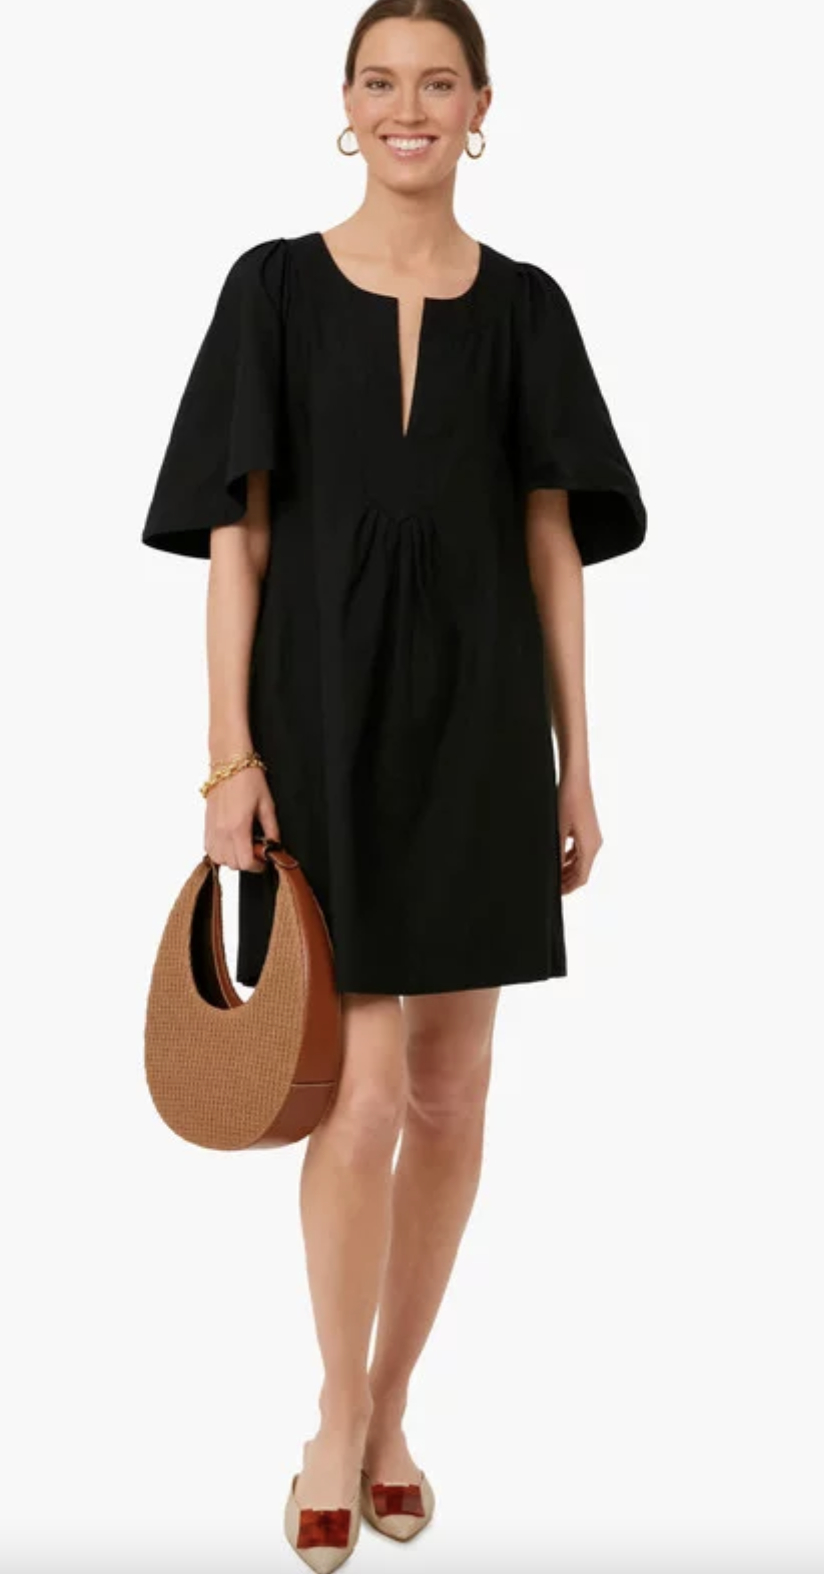 dress for spring dress for summer versatile black dress for spring versatile black dress for summer